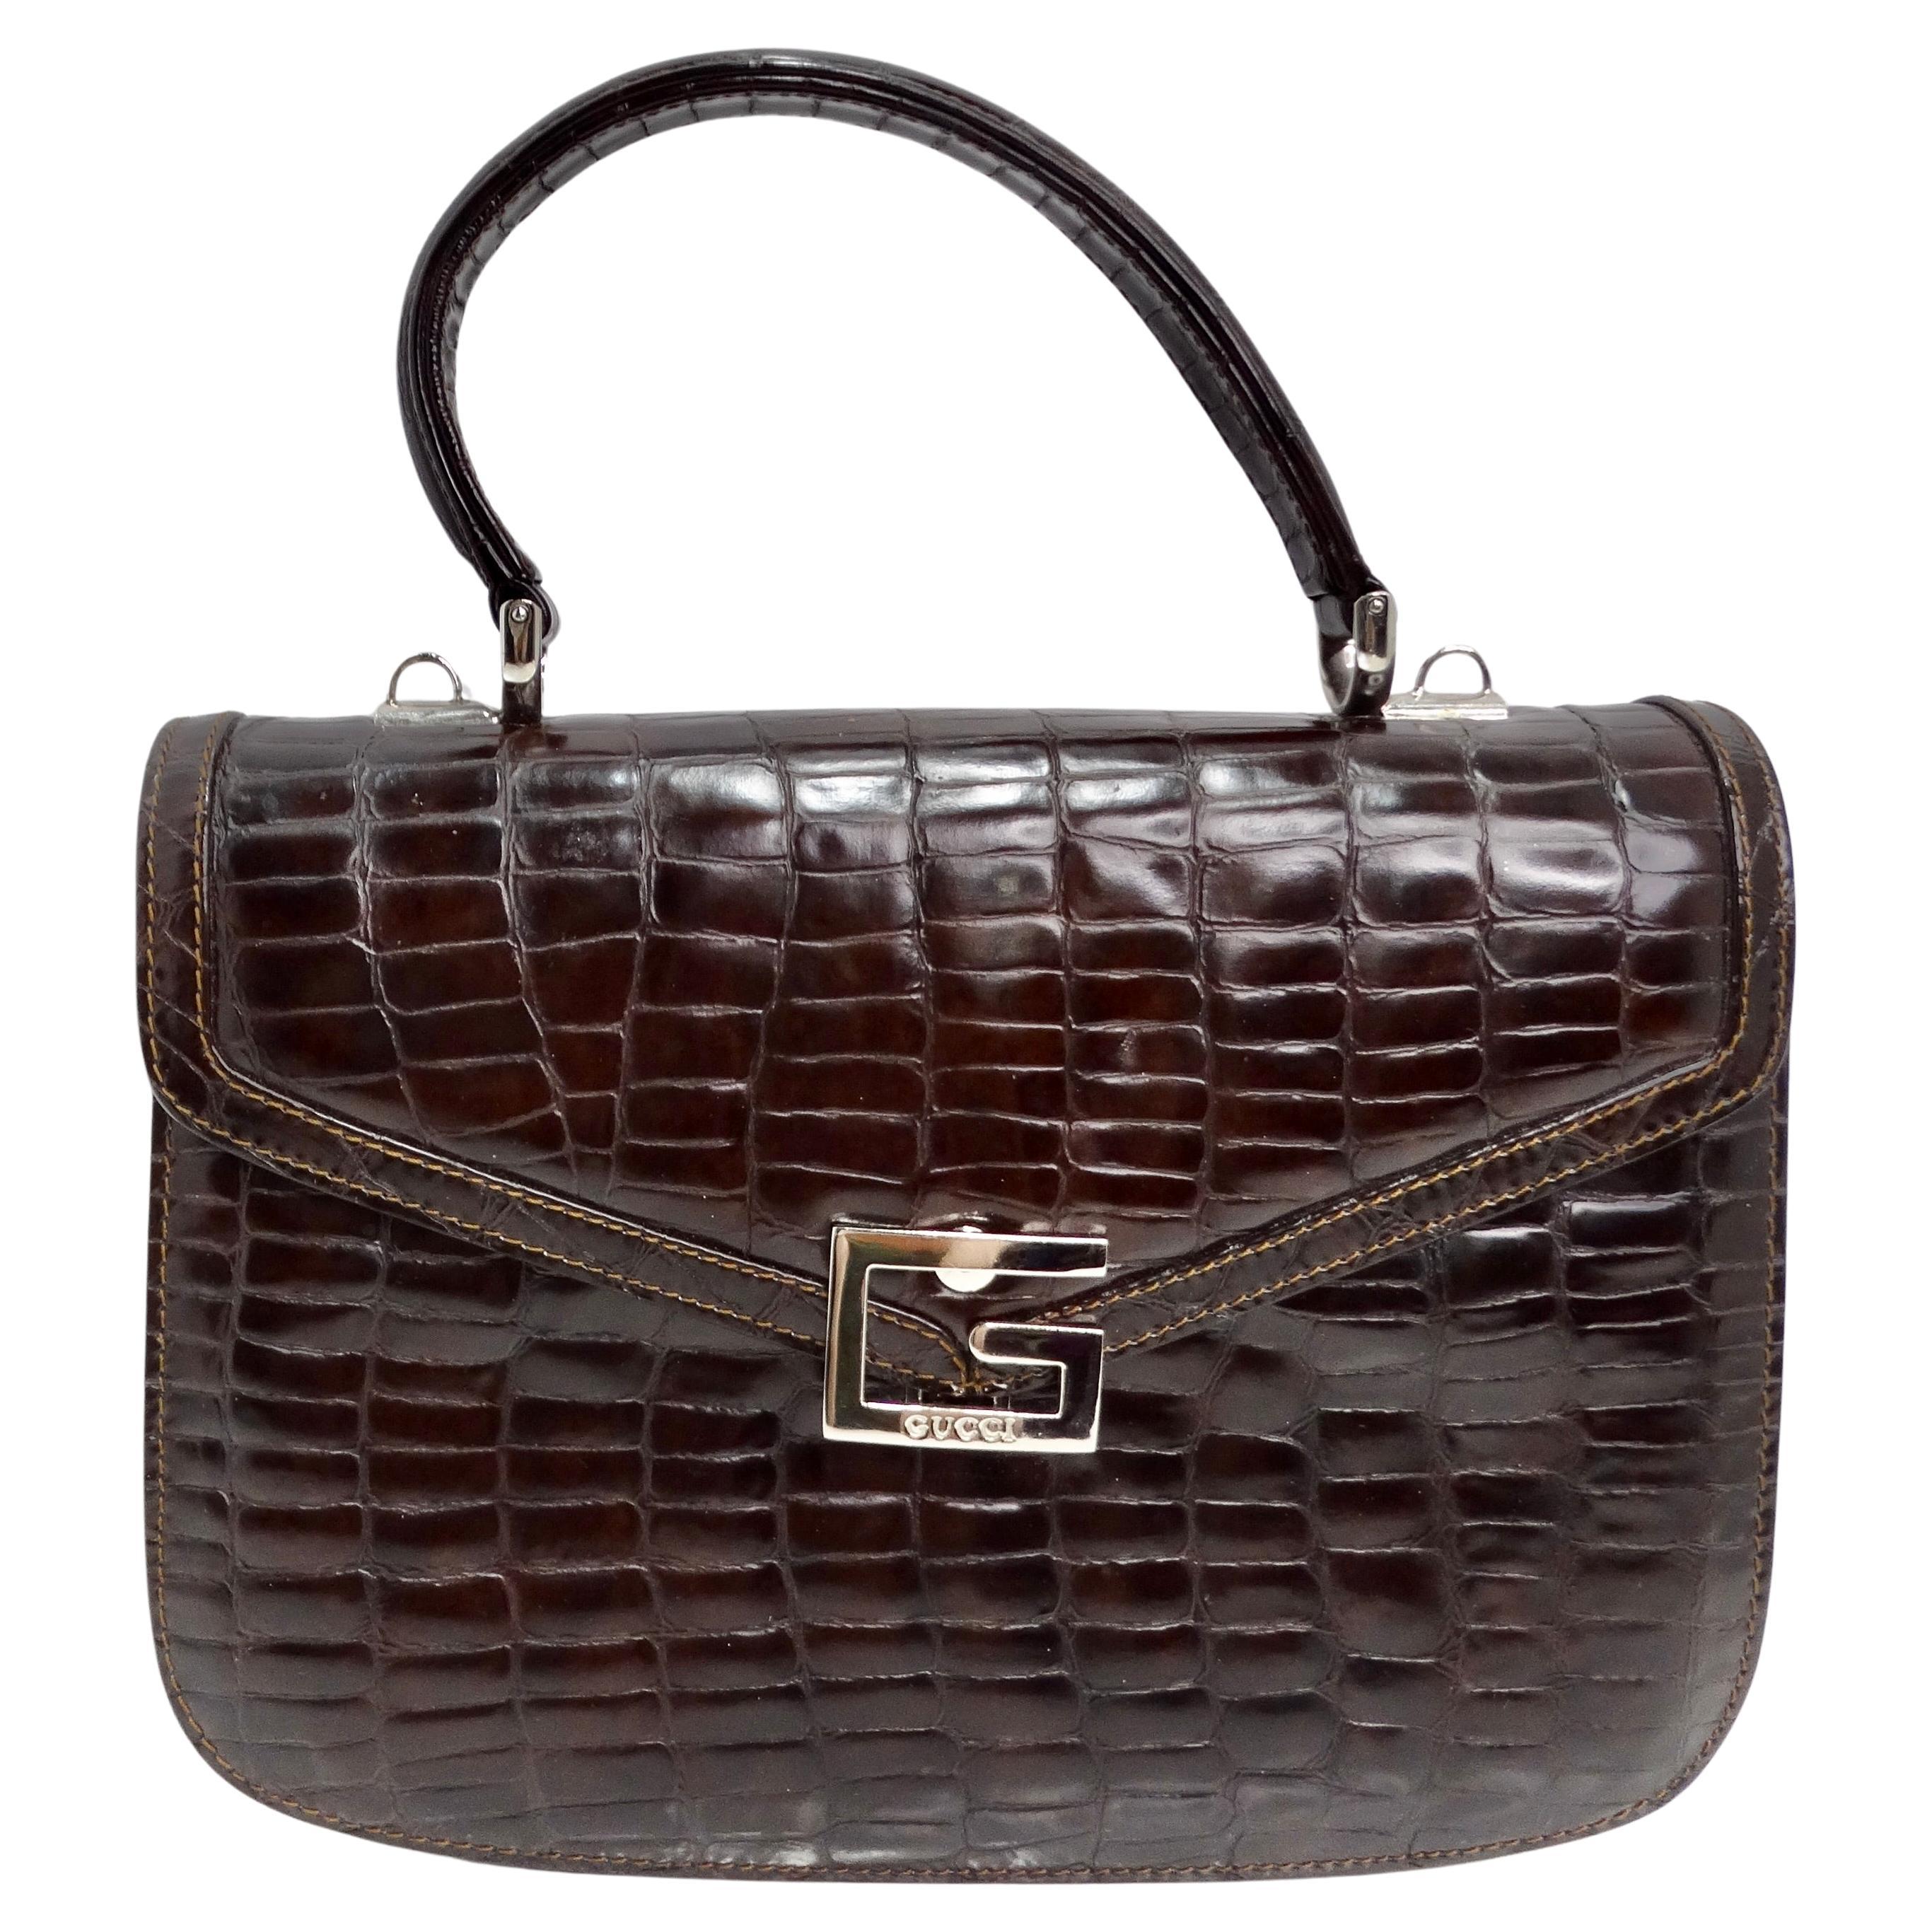 Gucci 1980s Alligator Embossed Leather Handbag For Sale